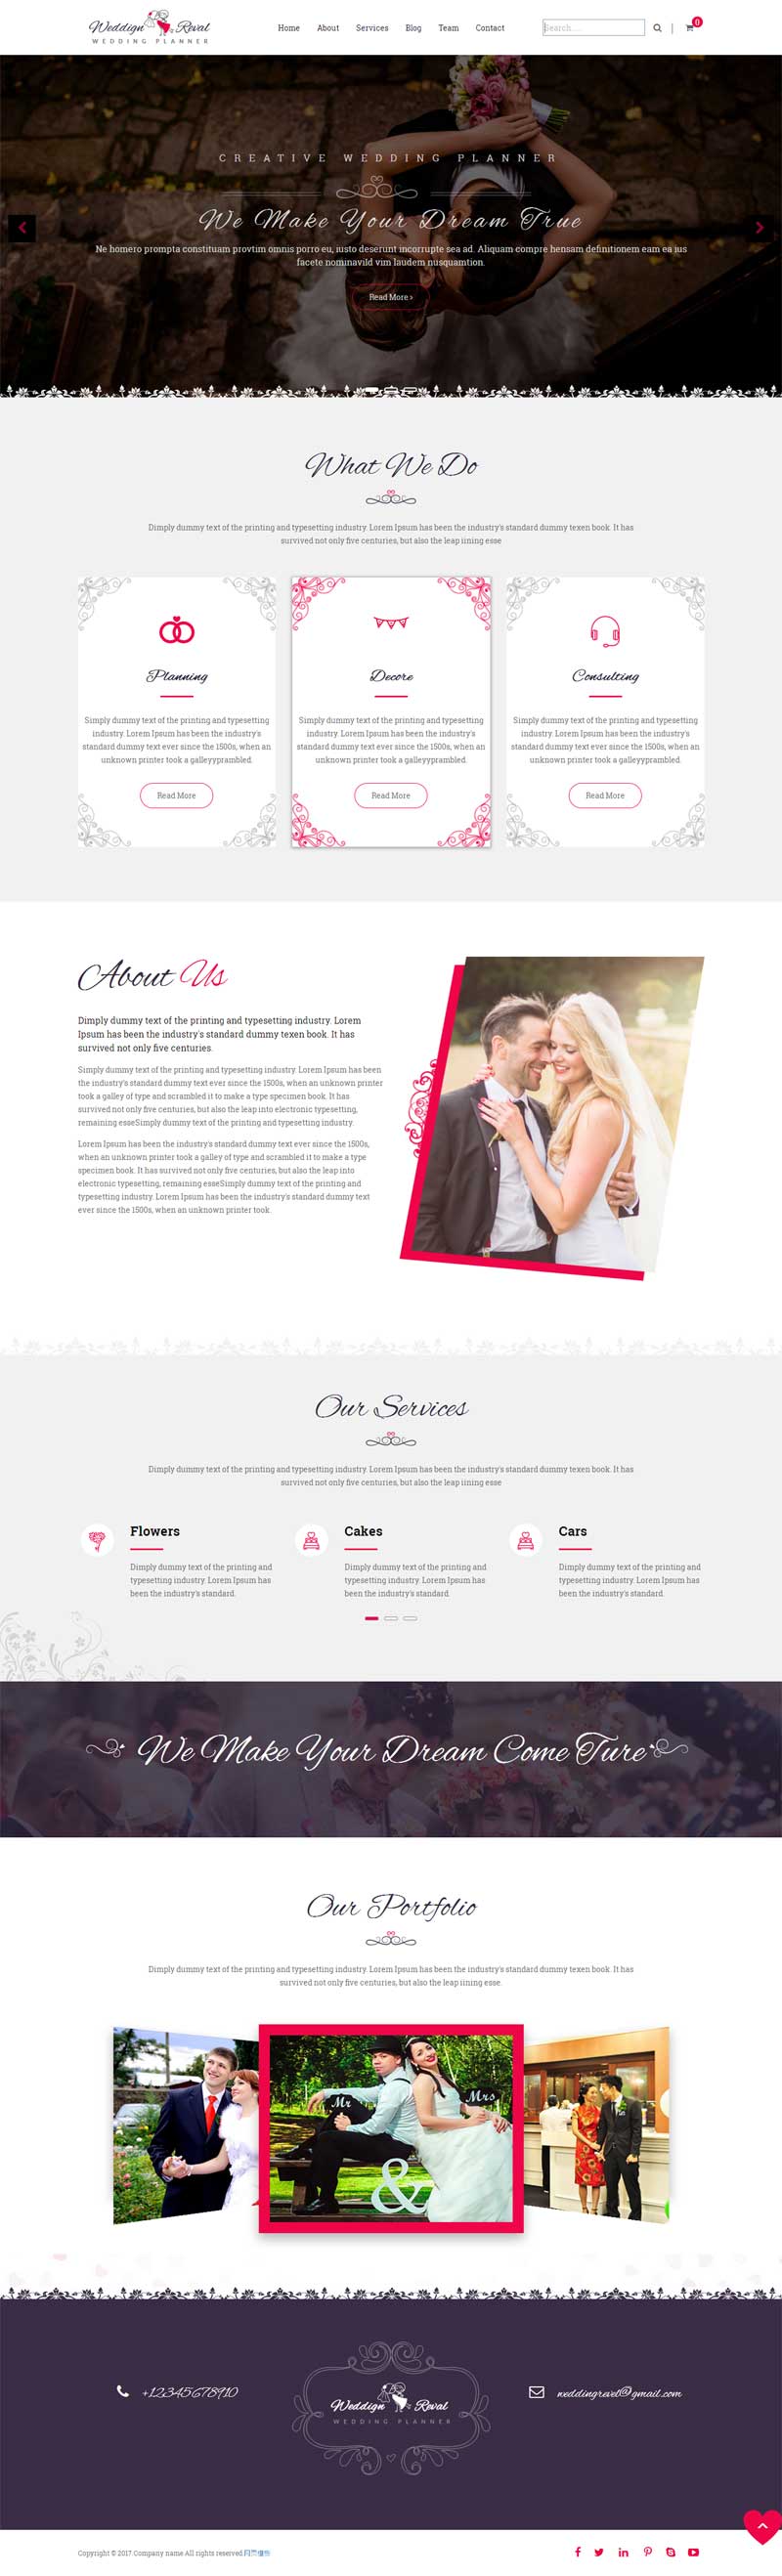 简洁欧美风格的婚庆摄影公司网站模板